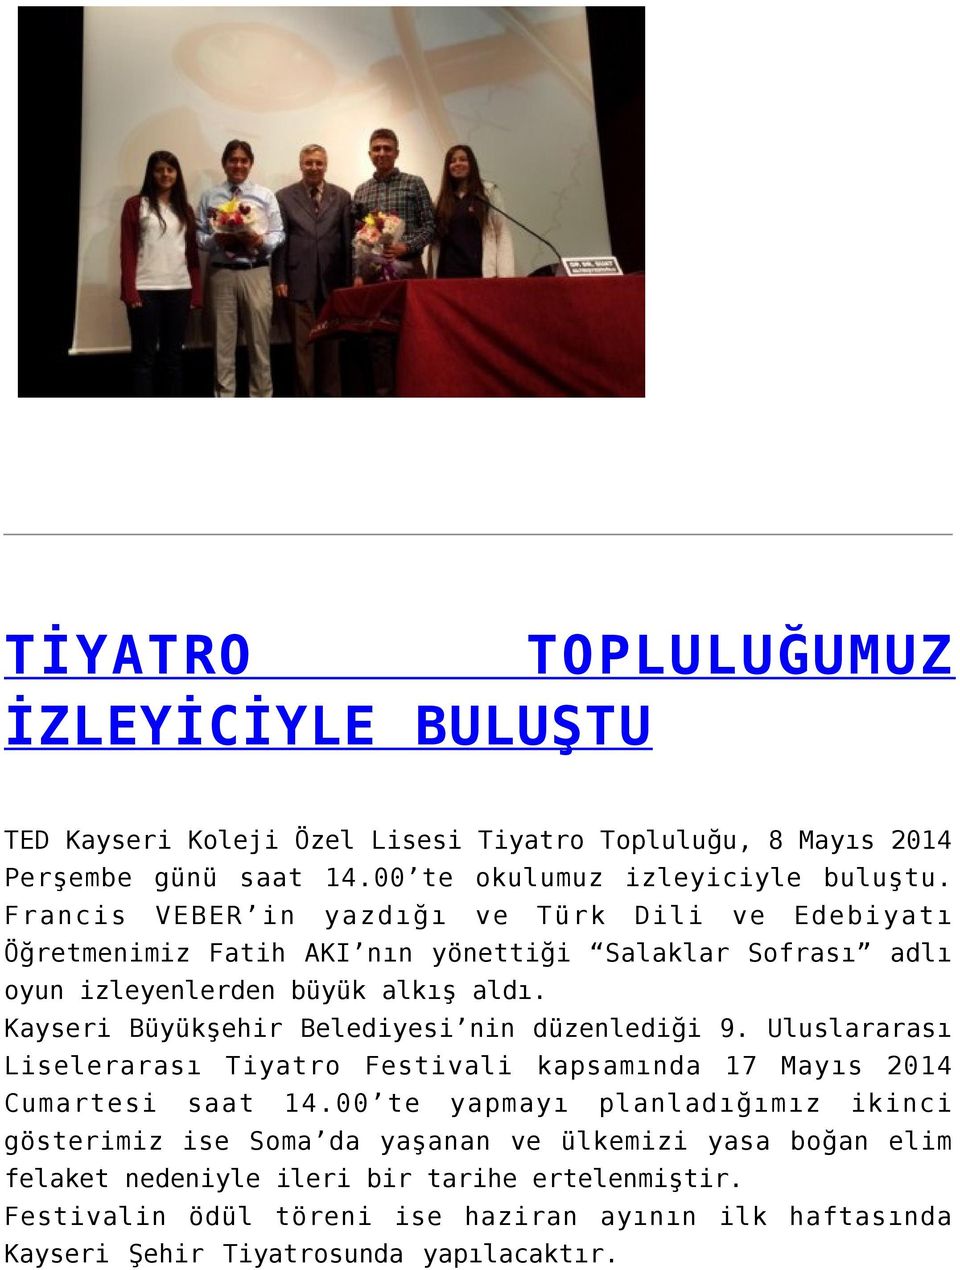 Kayseri Büyükşehir Belediyesi nin düzenlediği 9. Uluslararası Liselerarası Tiyatro Festivali kapsamında 17 Mayıs 2014 Cumartesi saat 14.